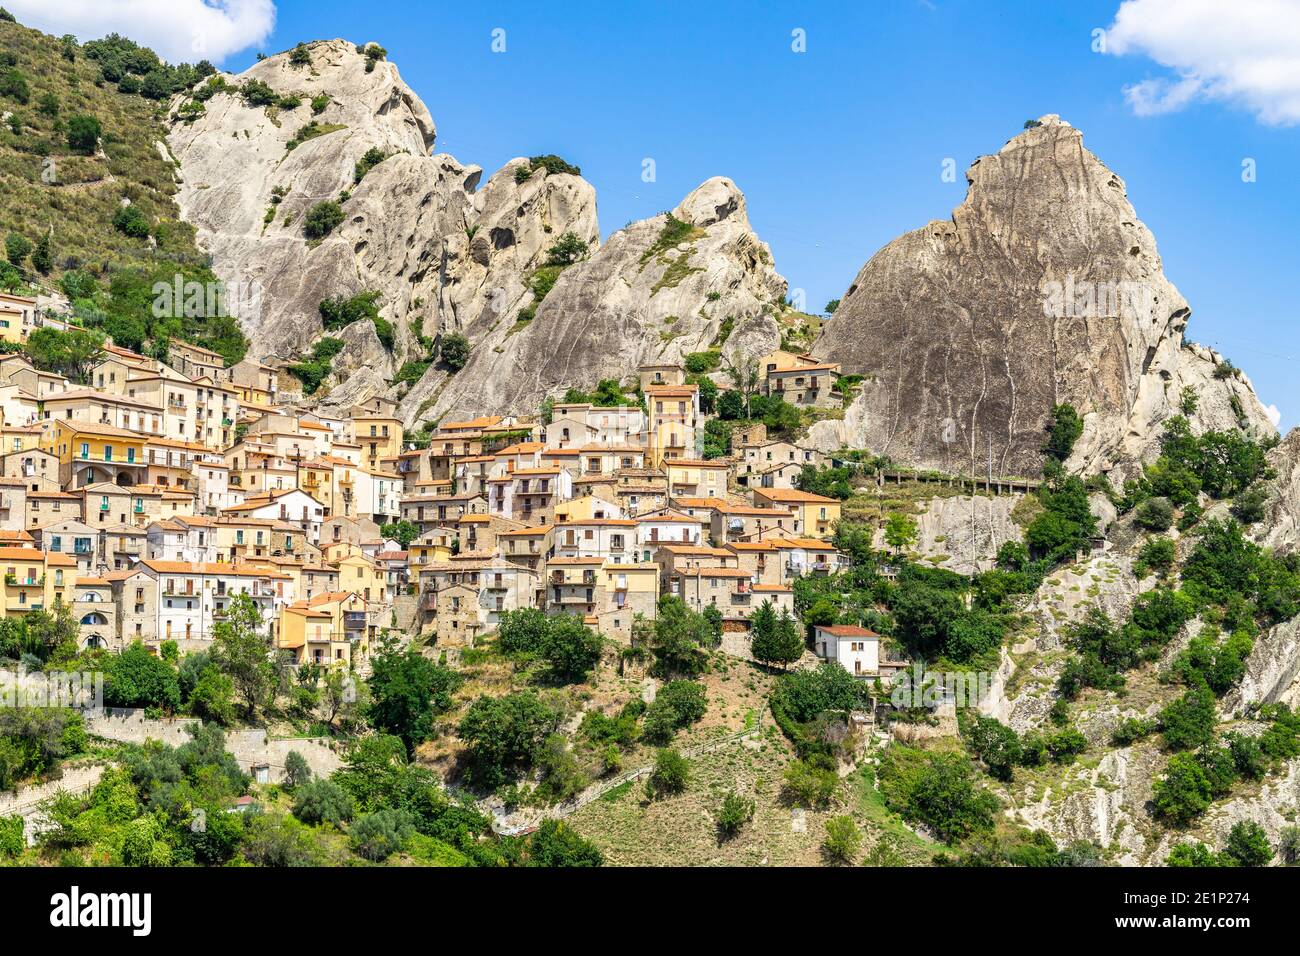 Castelmezzano est un beau village de la région de Basilicate, parmi les sommets de la Dolomiti lucane, en Italie Banque D'Images